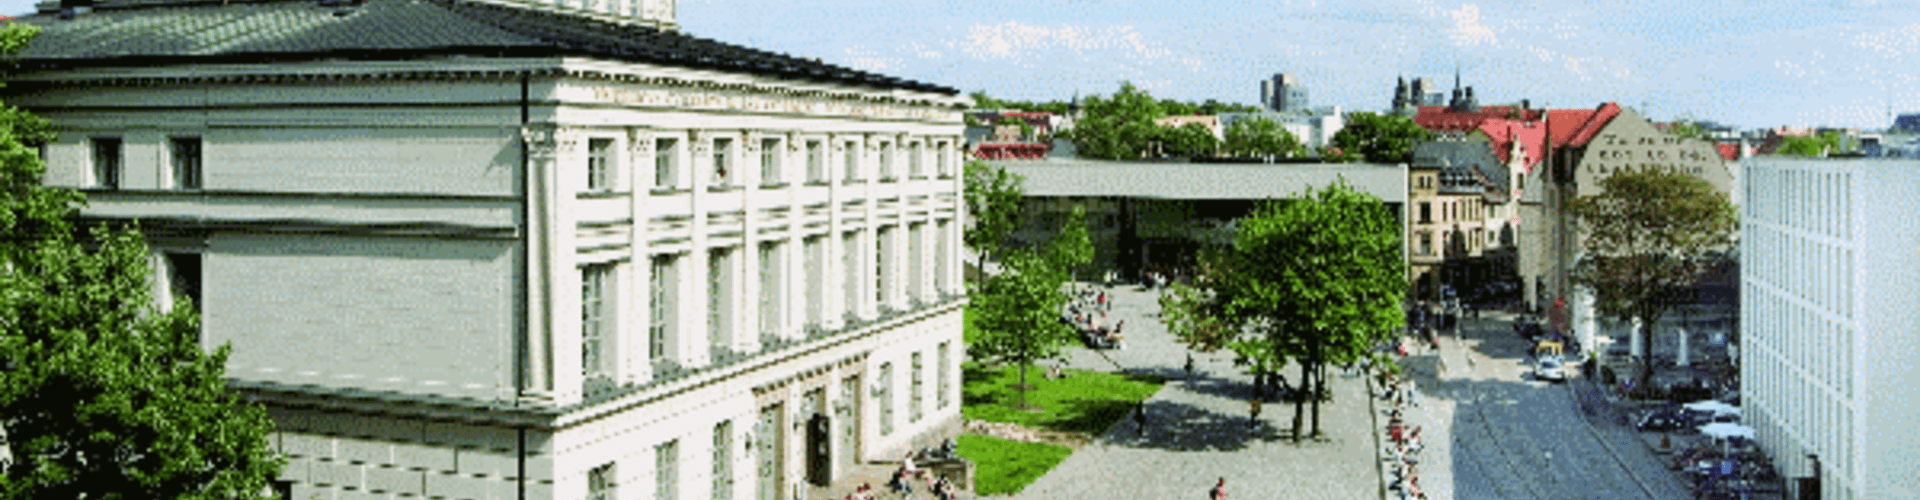 Campus und Uniplatz der Universität Halle-Wittenberg